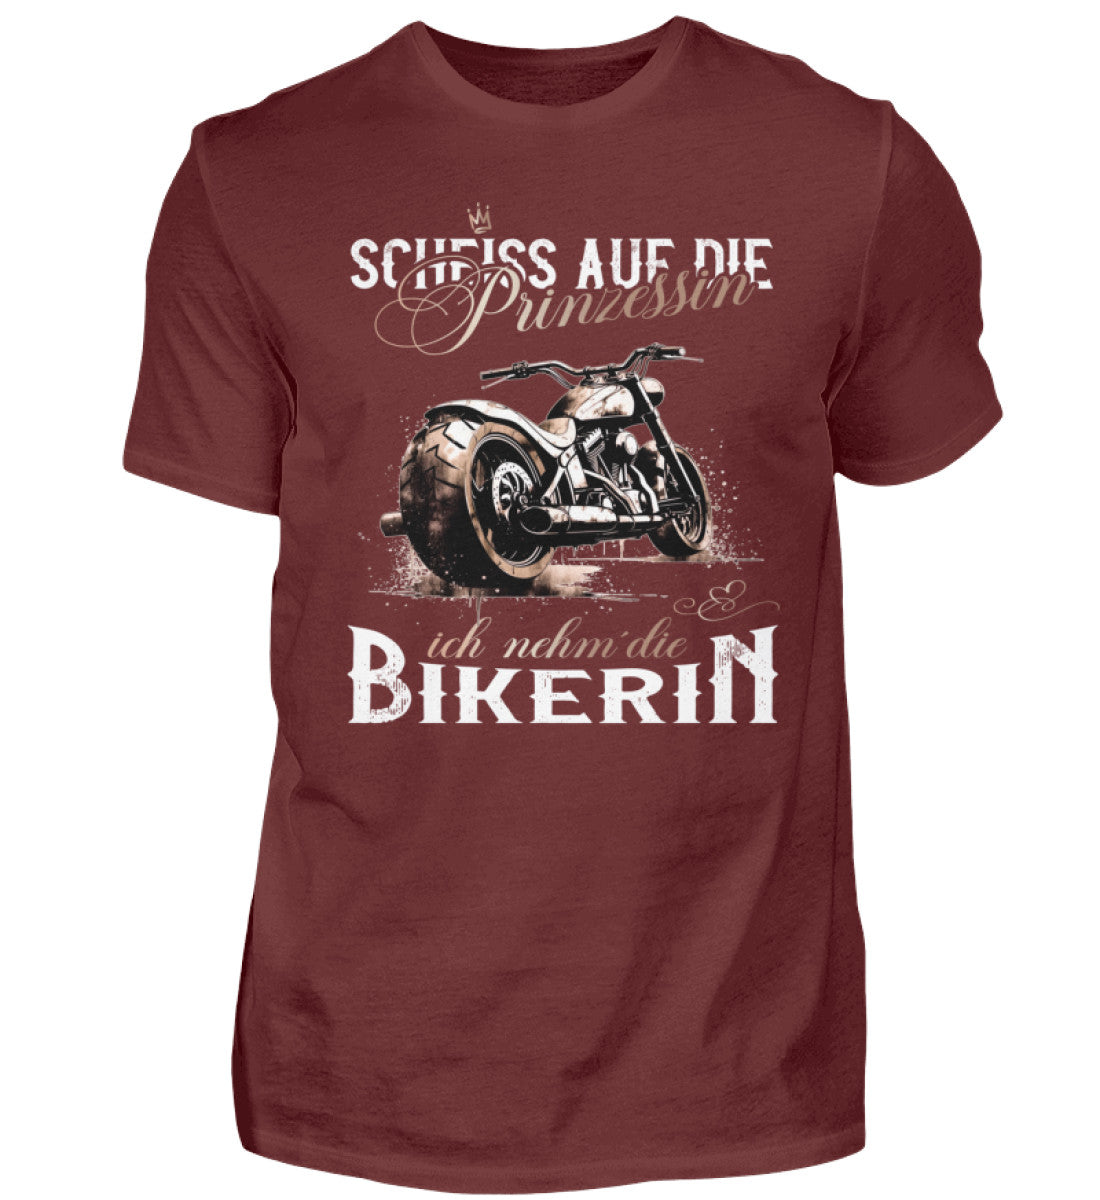 Ein Biker T-Shirt für Motorradfahrer von Wingbikers mit dem Aufdruck, Scheiß auf die Prinzessin - Ich nehm´ die Bikerin - in weinrot.